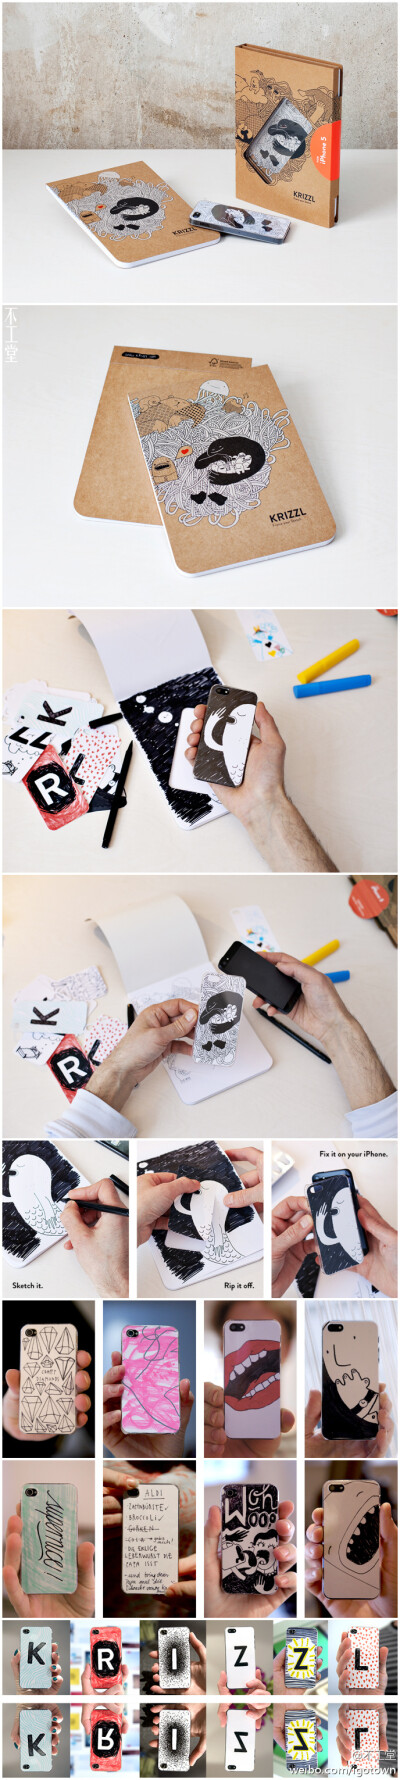 说起来，这是个很简单的创意，手绘一张和手机一样大小的卡片，然后放到清水套里面，就成了一个独一无二专属于自己的手机装饰。Krizzl就将这个创意变成了现实，开发了这个材料包，专用于iphone这种后背平直的手机！